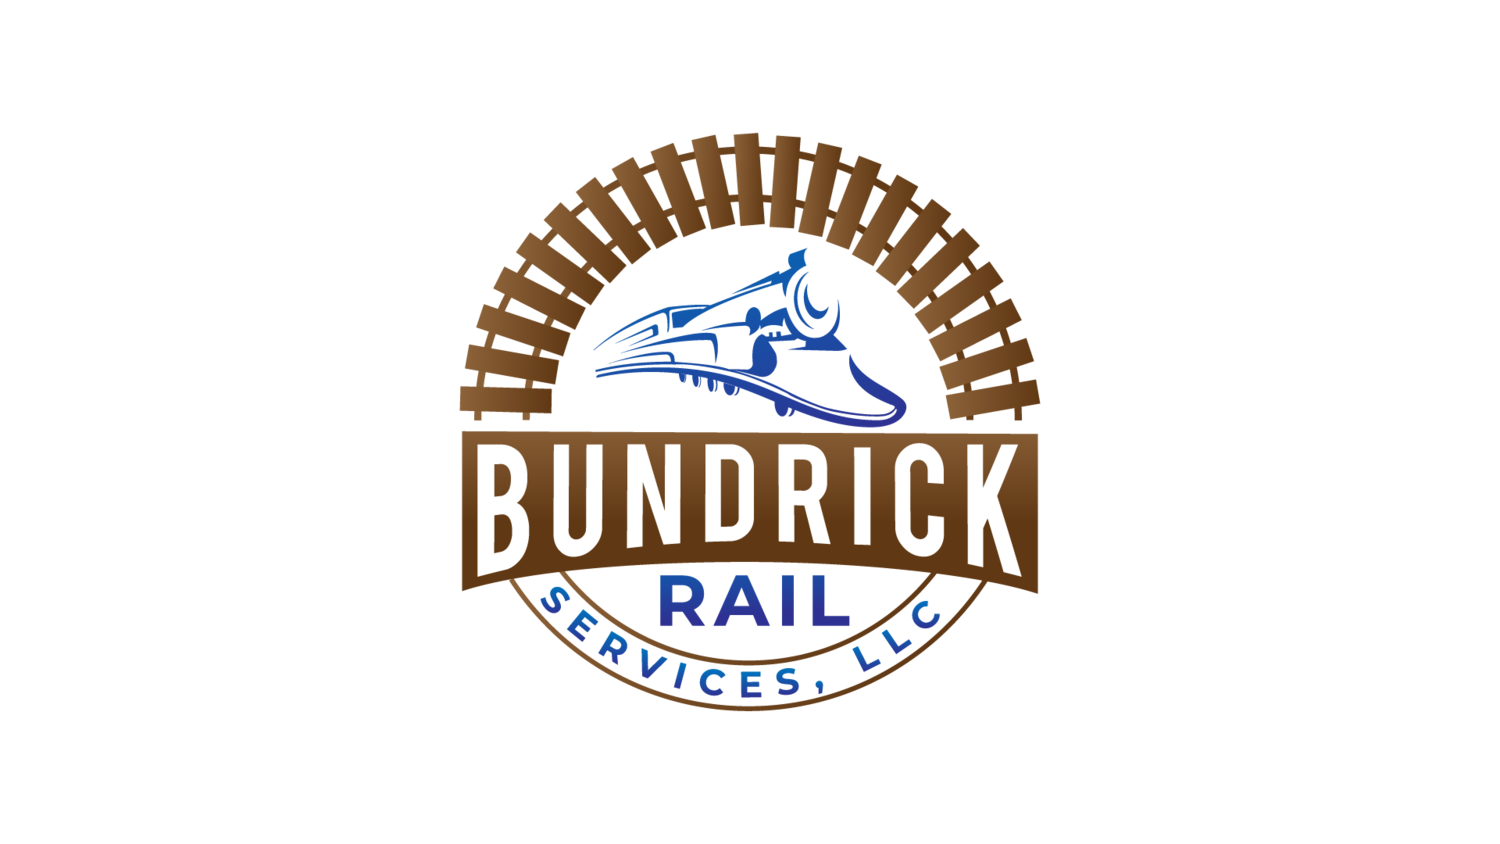 Bundrick Rail Services, LLC